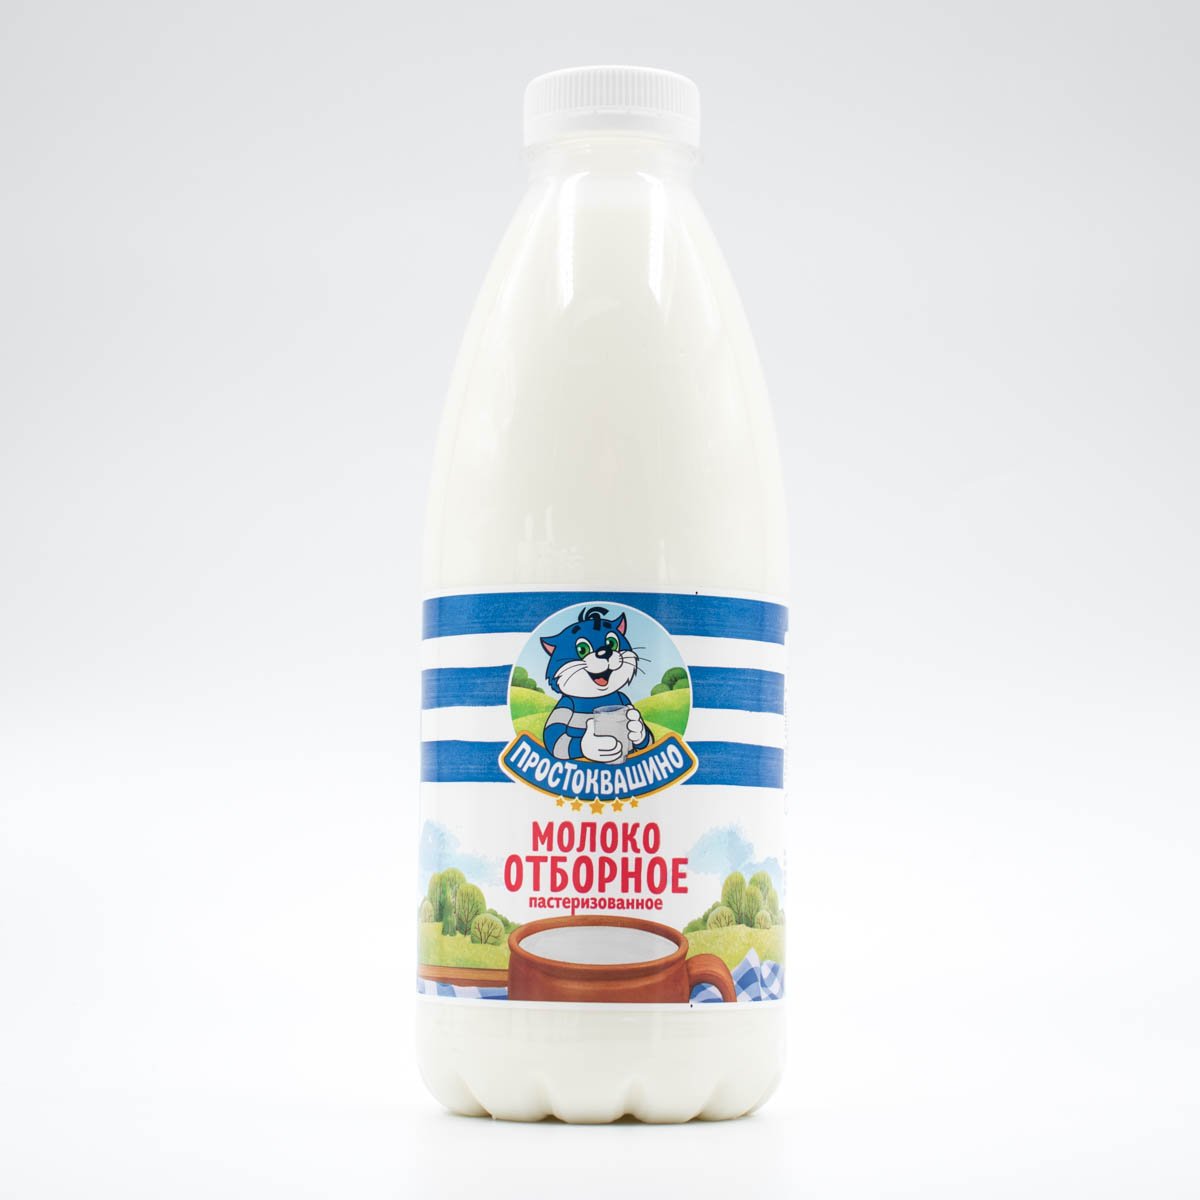 Молоко Простоквашино 3.2-6% Отборное пл/б 930г